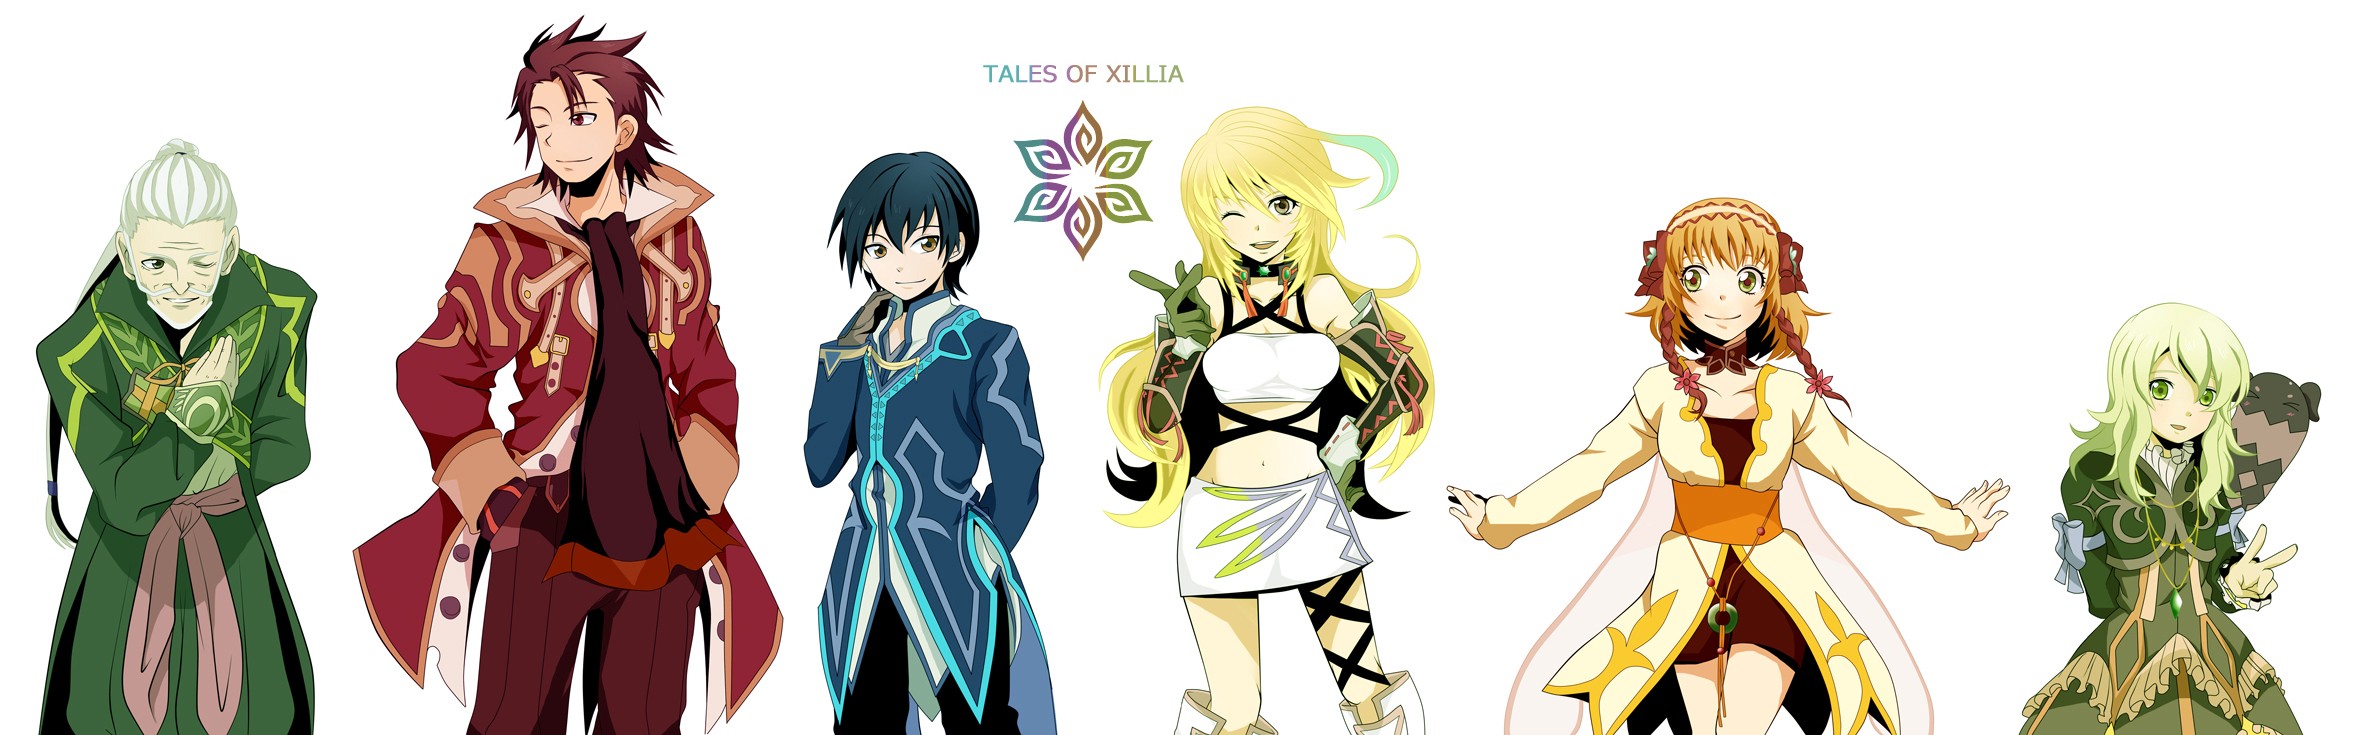 Tales Of Wallpaper Xillia